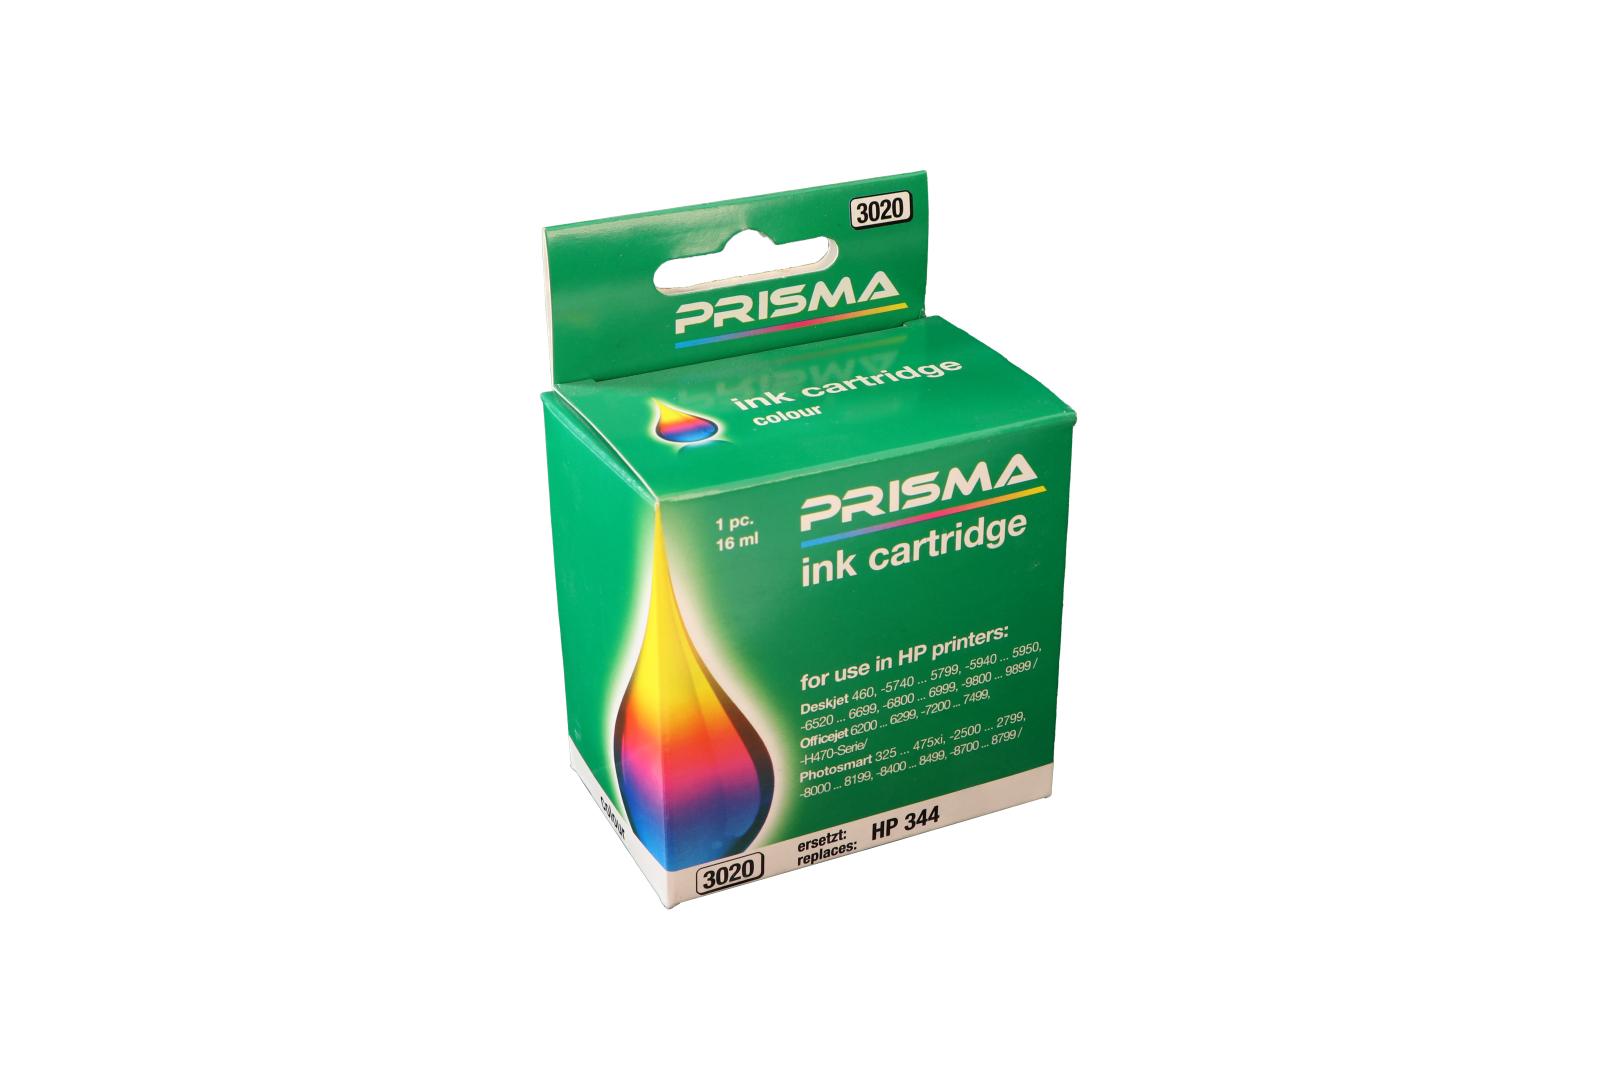 PRISMA 3020 Druckerpatrone für HP Tintenstrahldrucker, color, 16 ml